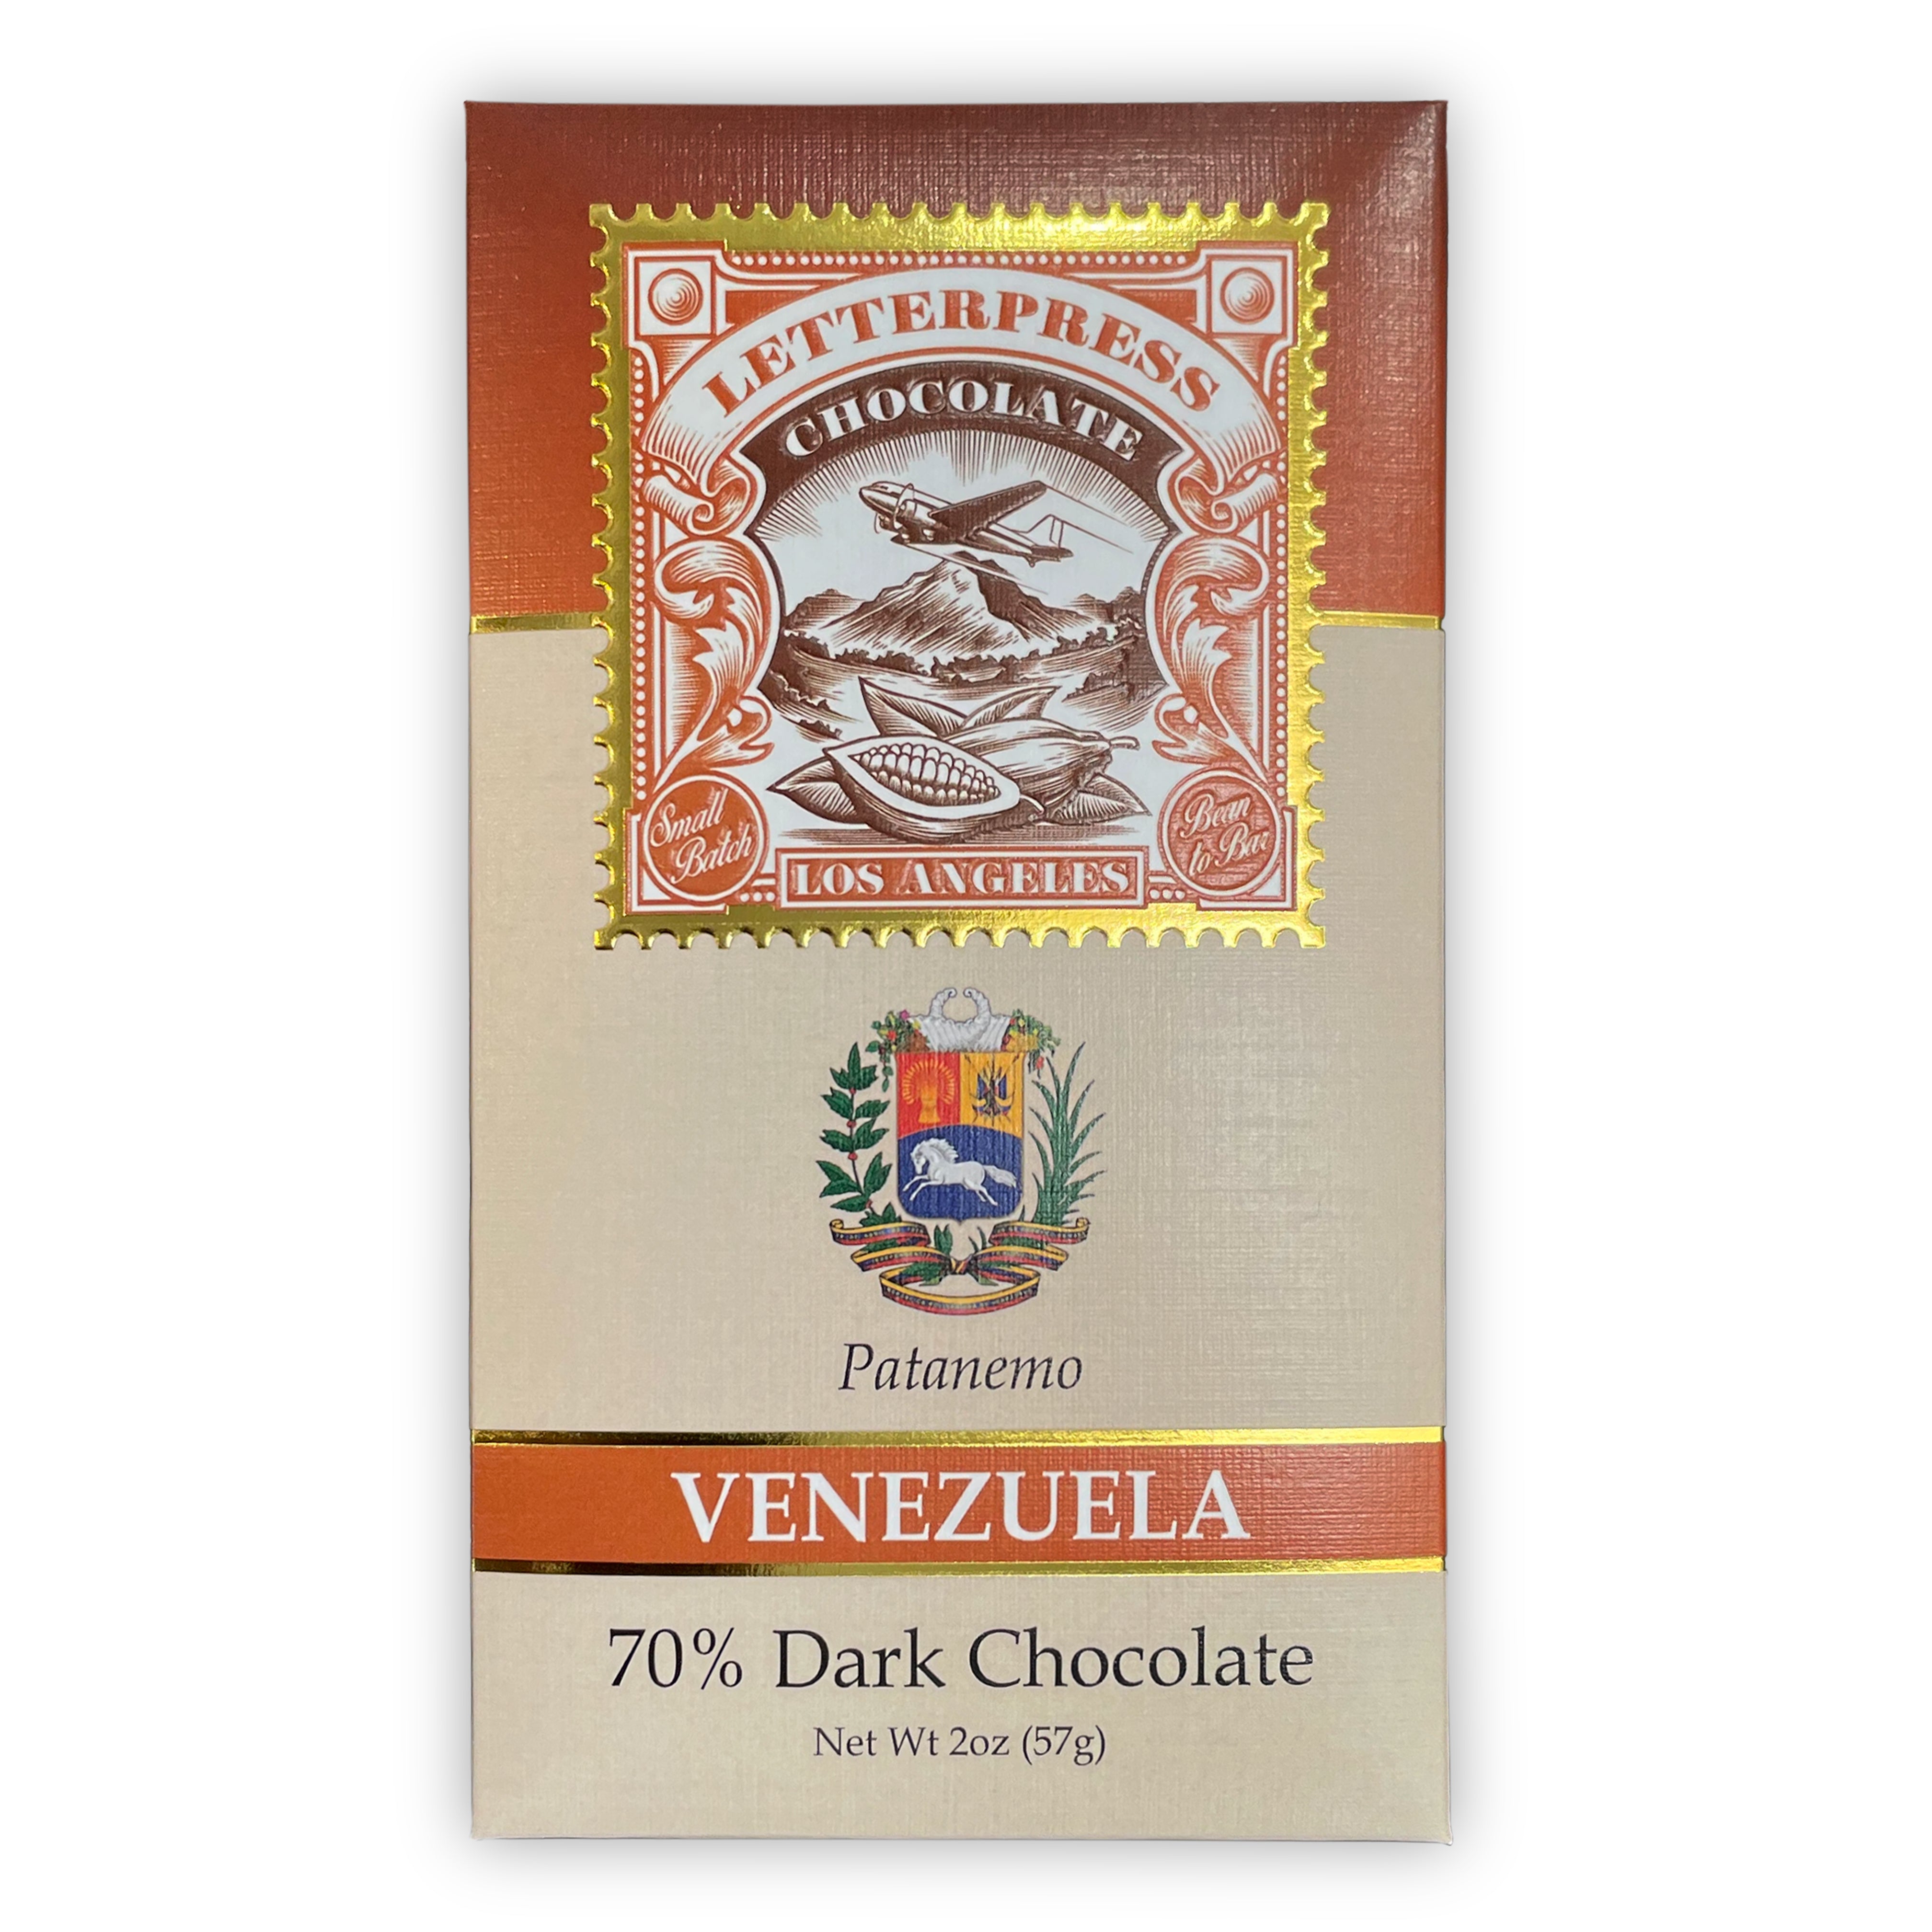 Patanemo Venezuela 70% Dark Chocolate packaging